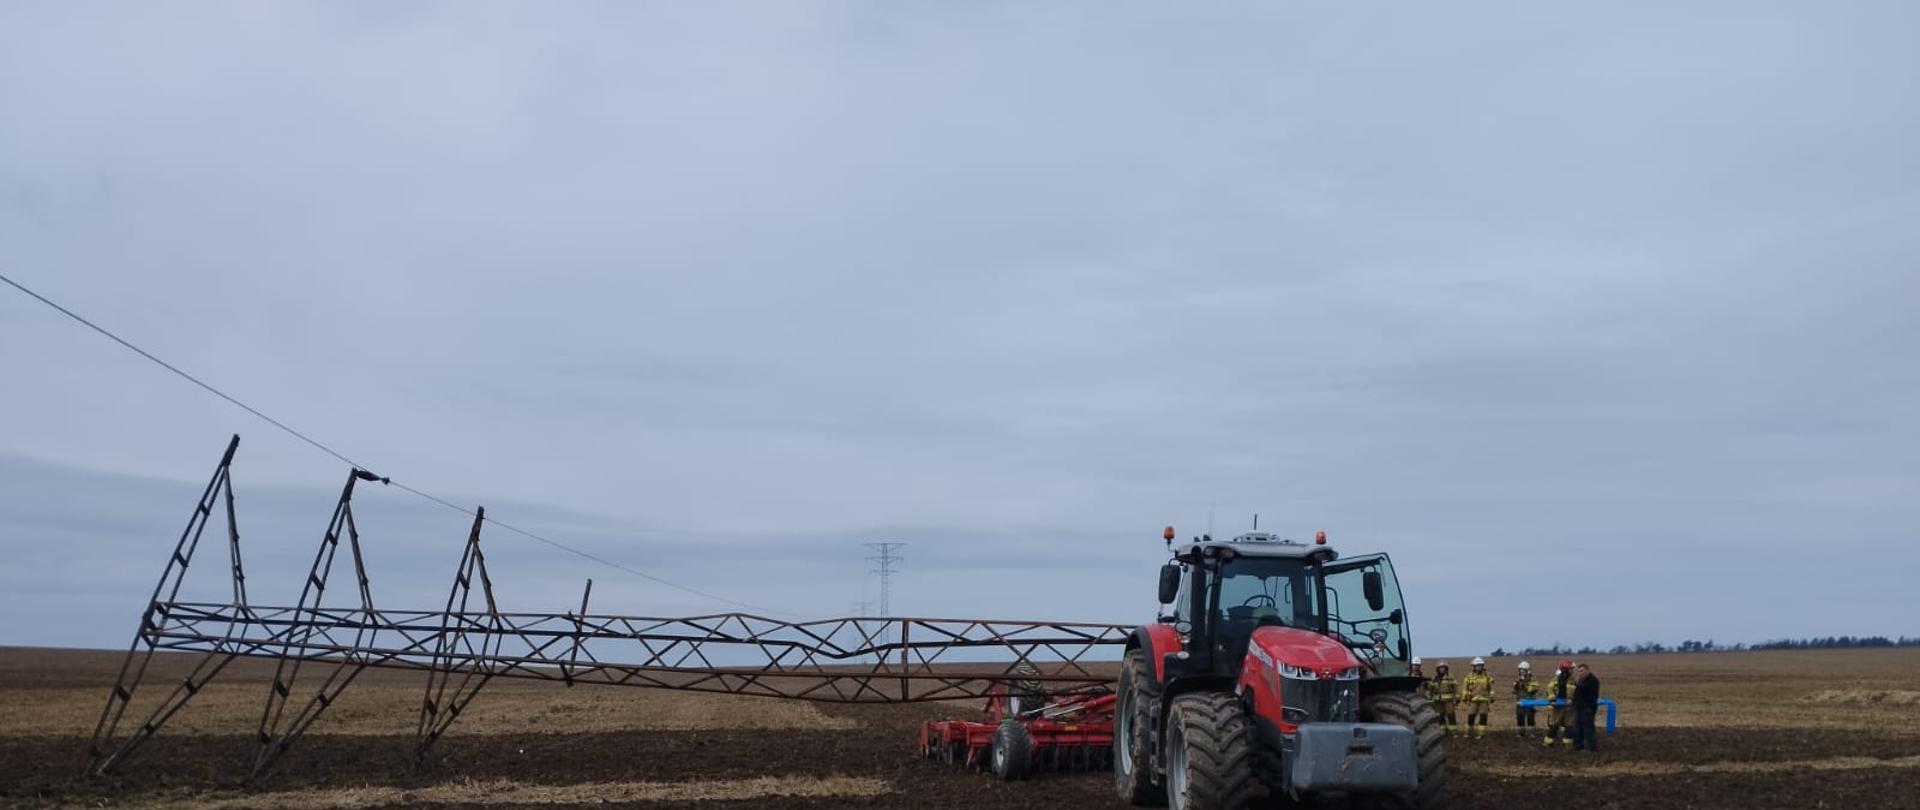 na polu rolniczym stoi traktor na którym leży przewrócony metalowy słup energetyczny